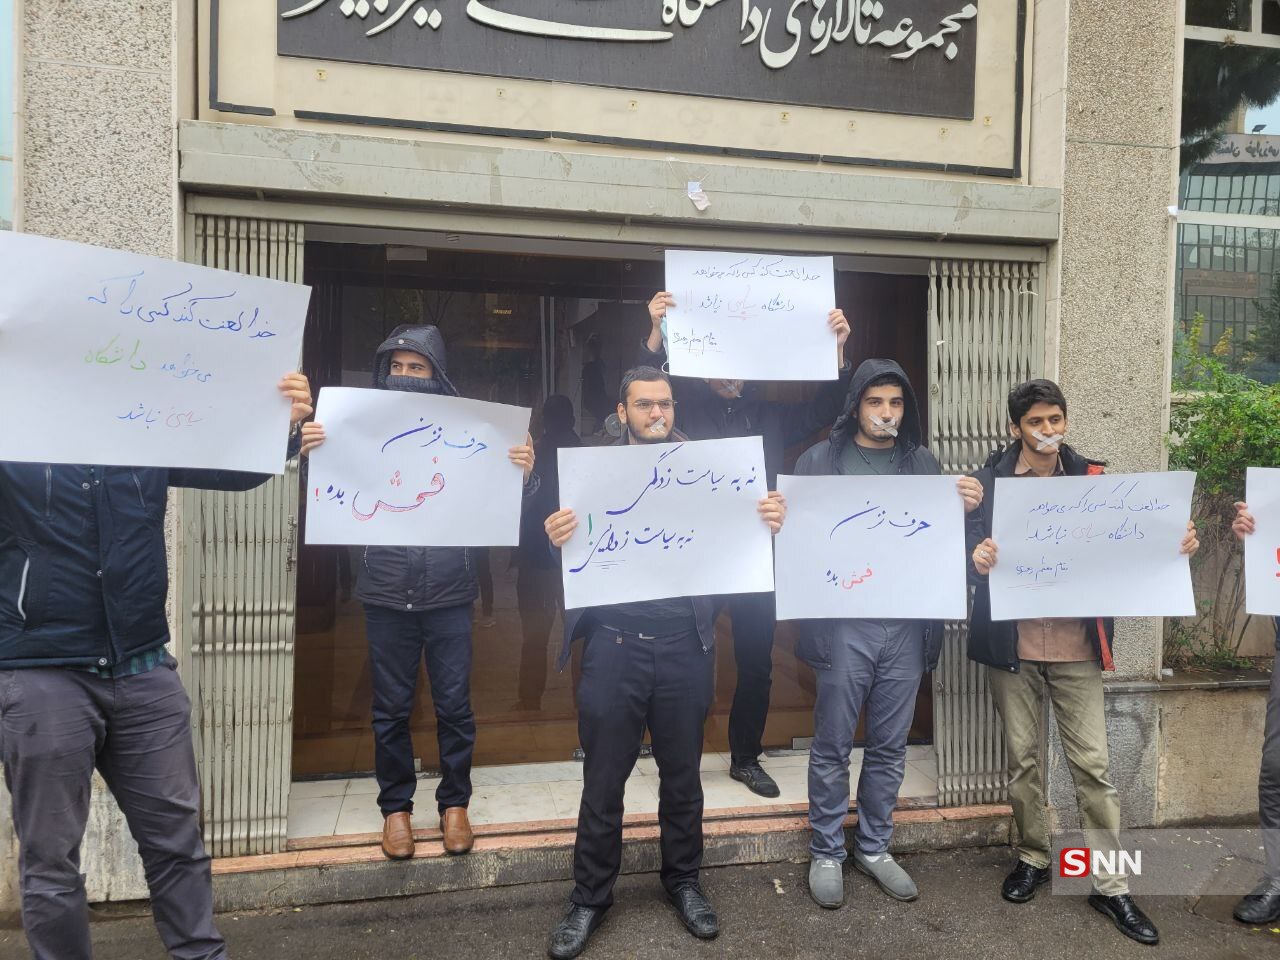 حرکت اعتراضی تعدادی از دانشجویان بسیجی نسبت به تصمیم عجیب مدیریت دانشگاه امیرکبیر +تصاویر